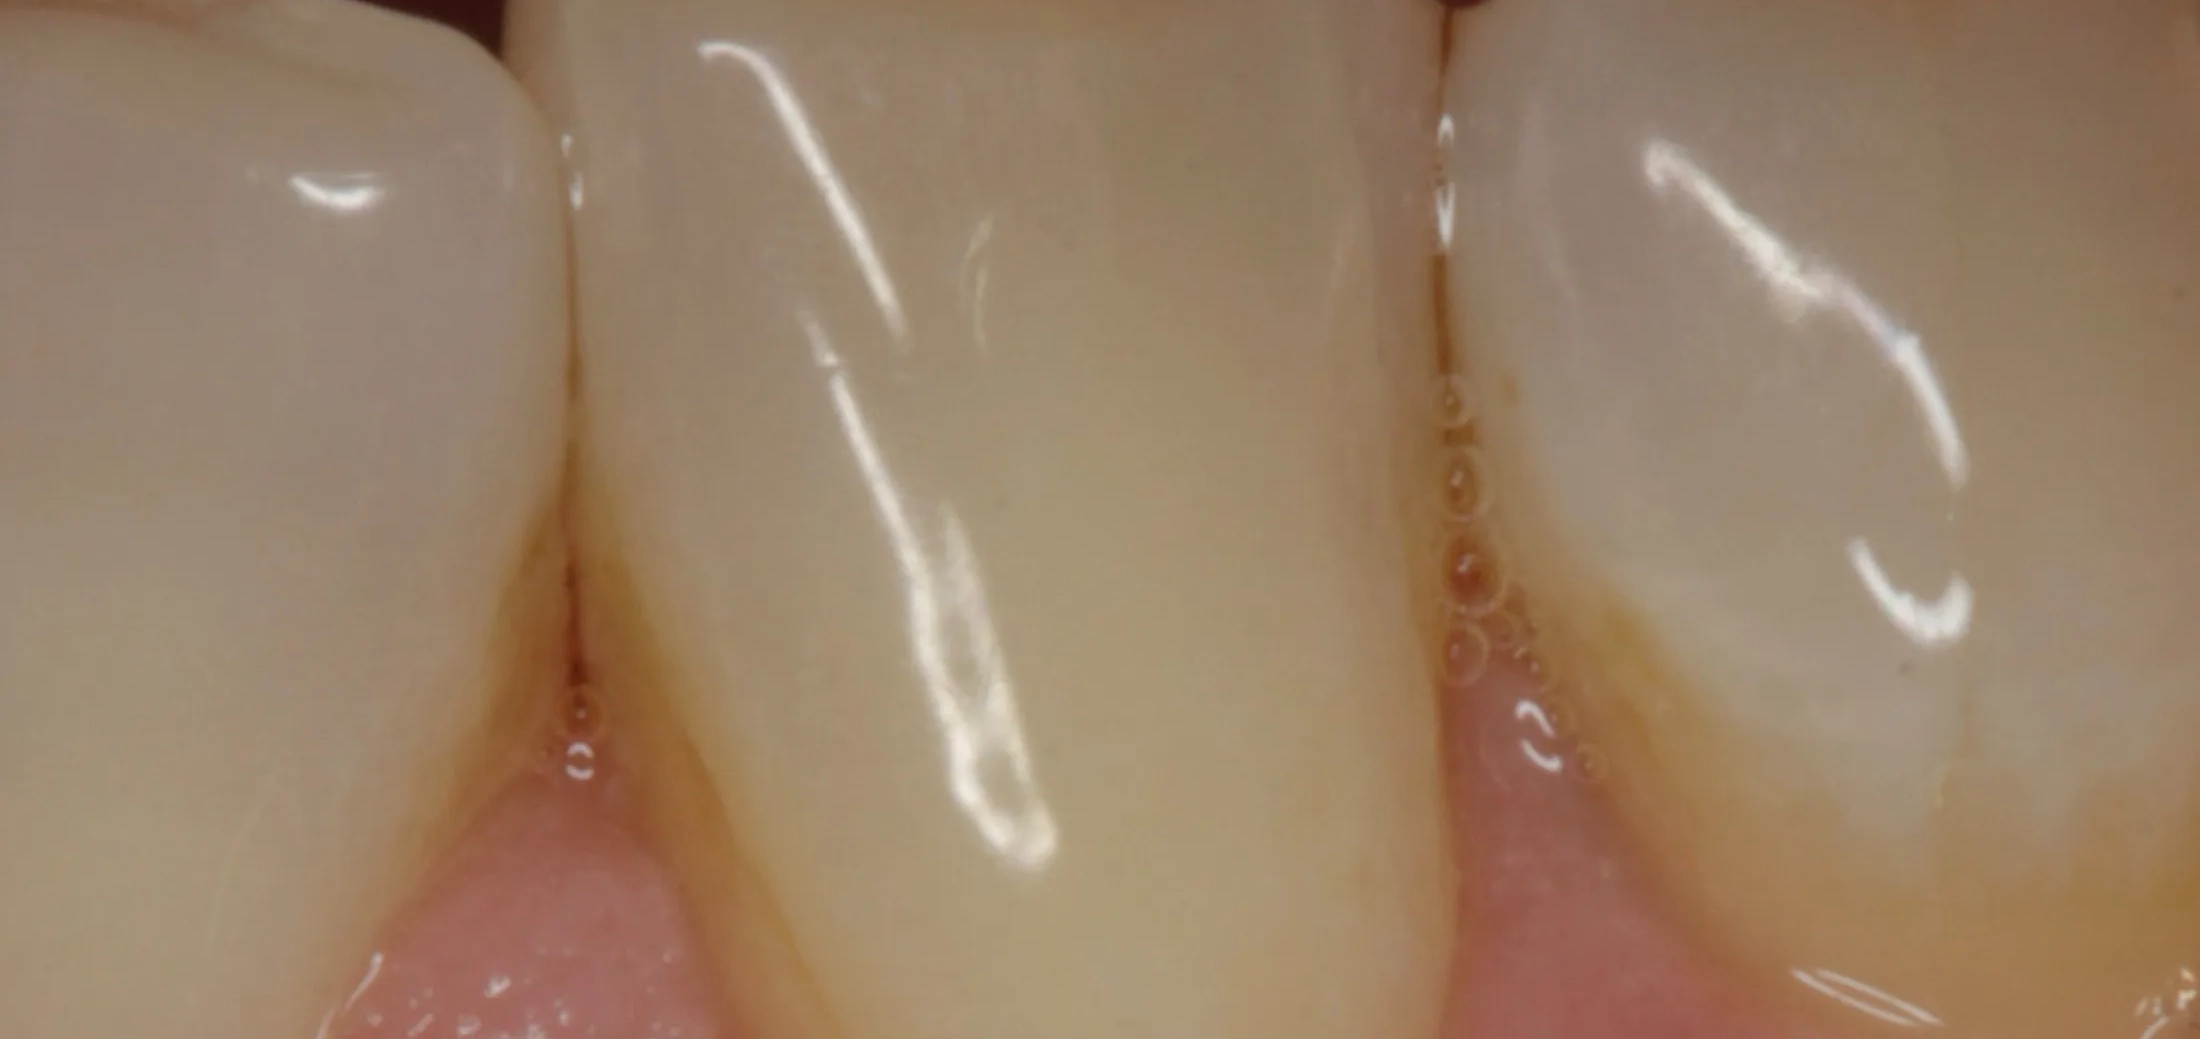 Post-operative view showcasing successful gum restoration